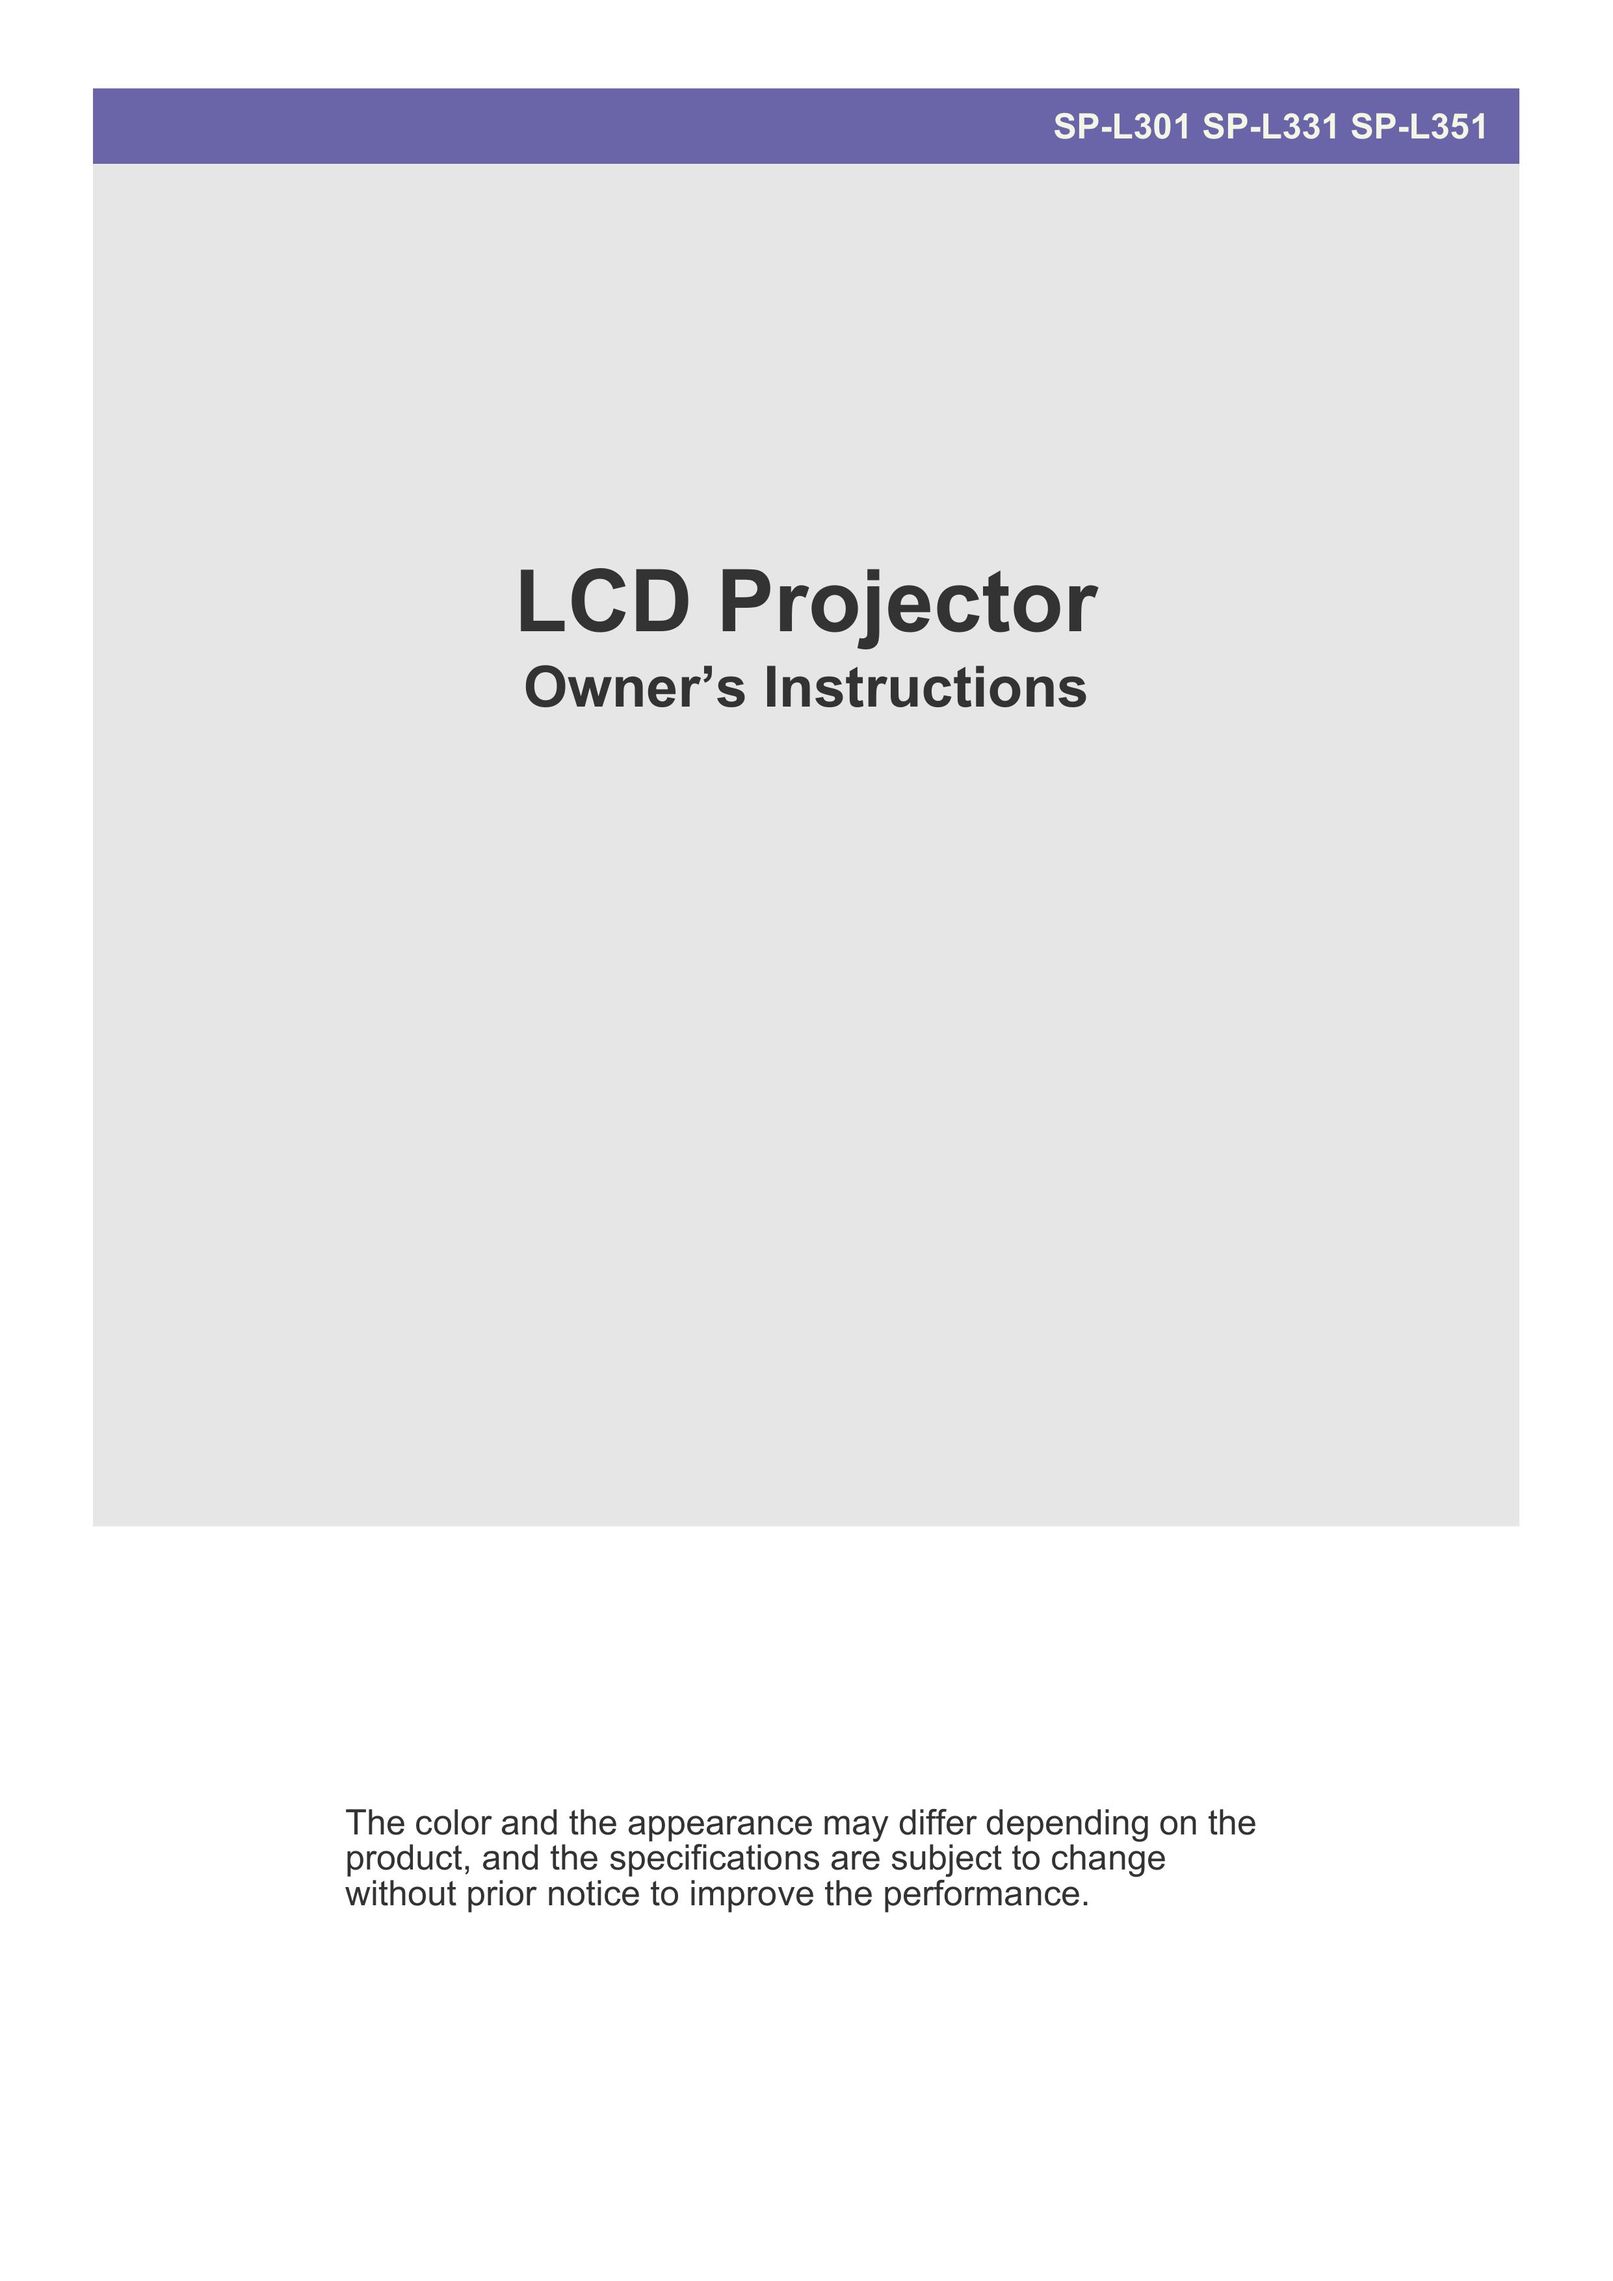 Samsung SP-L301 Projector User Manual